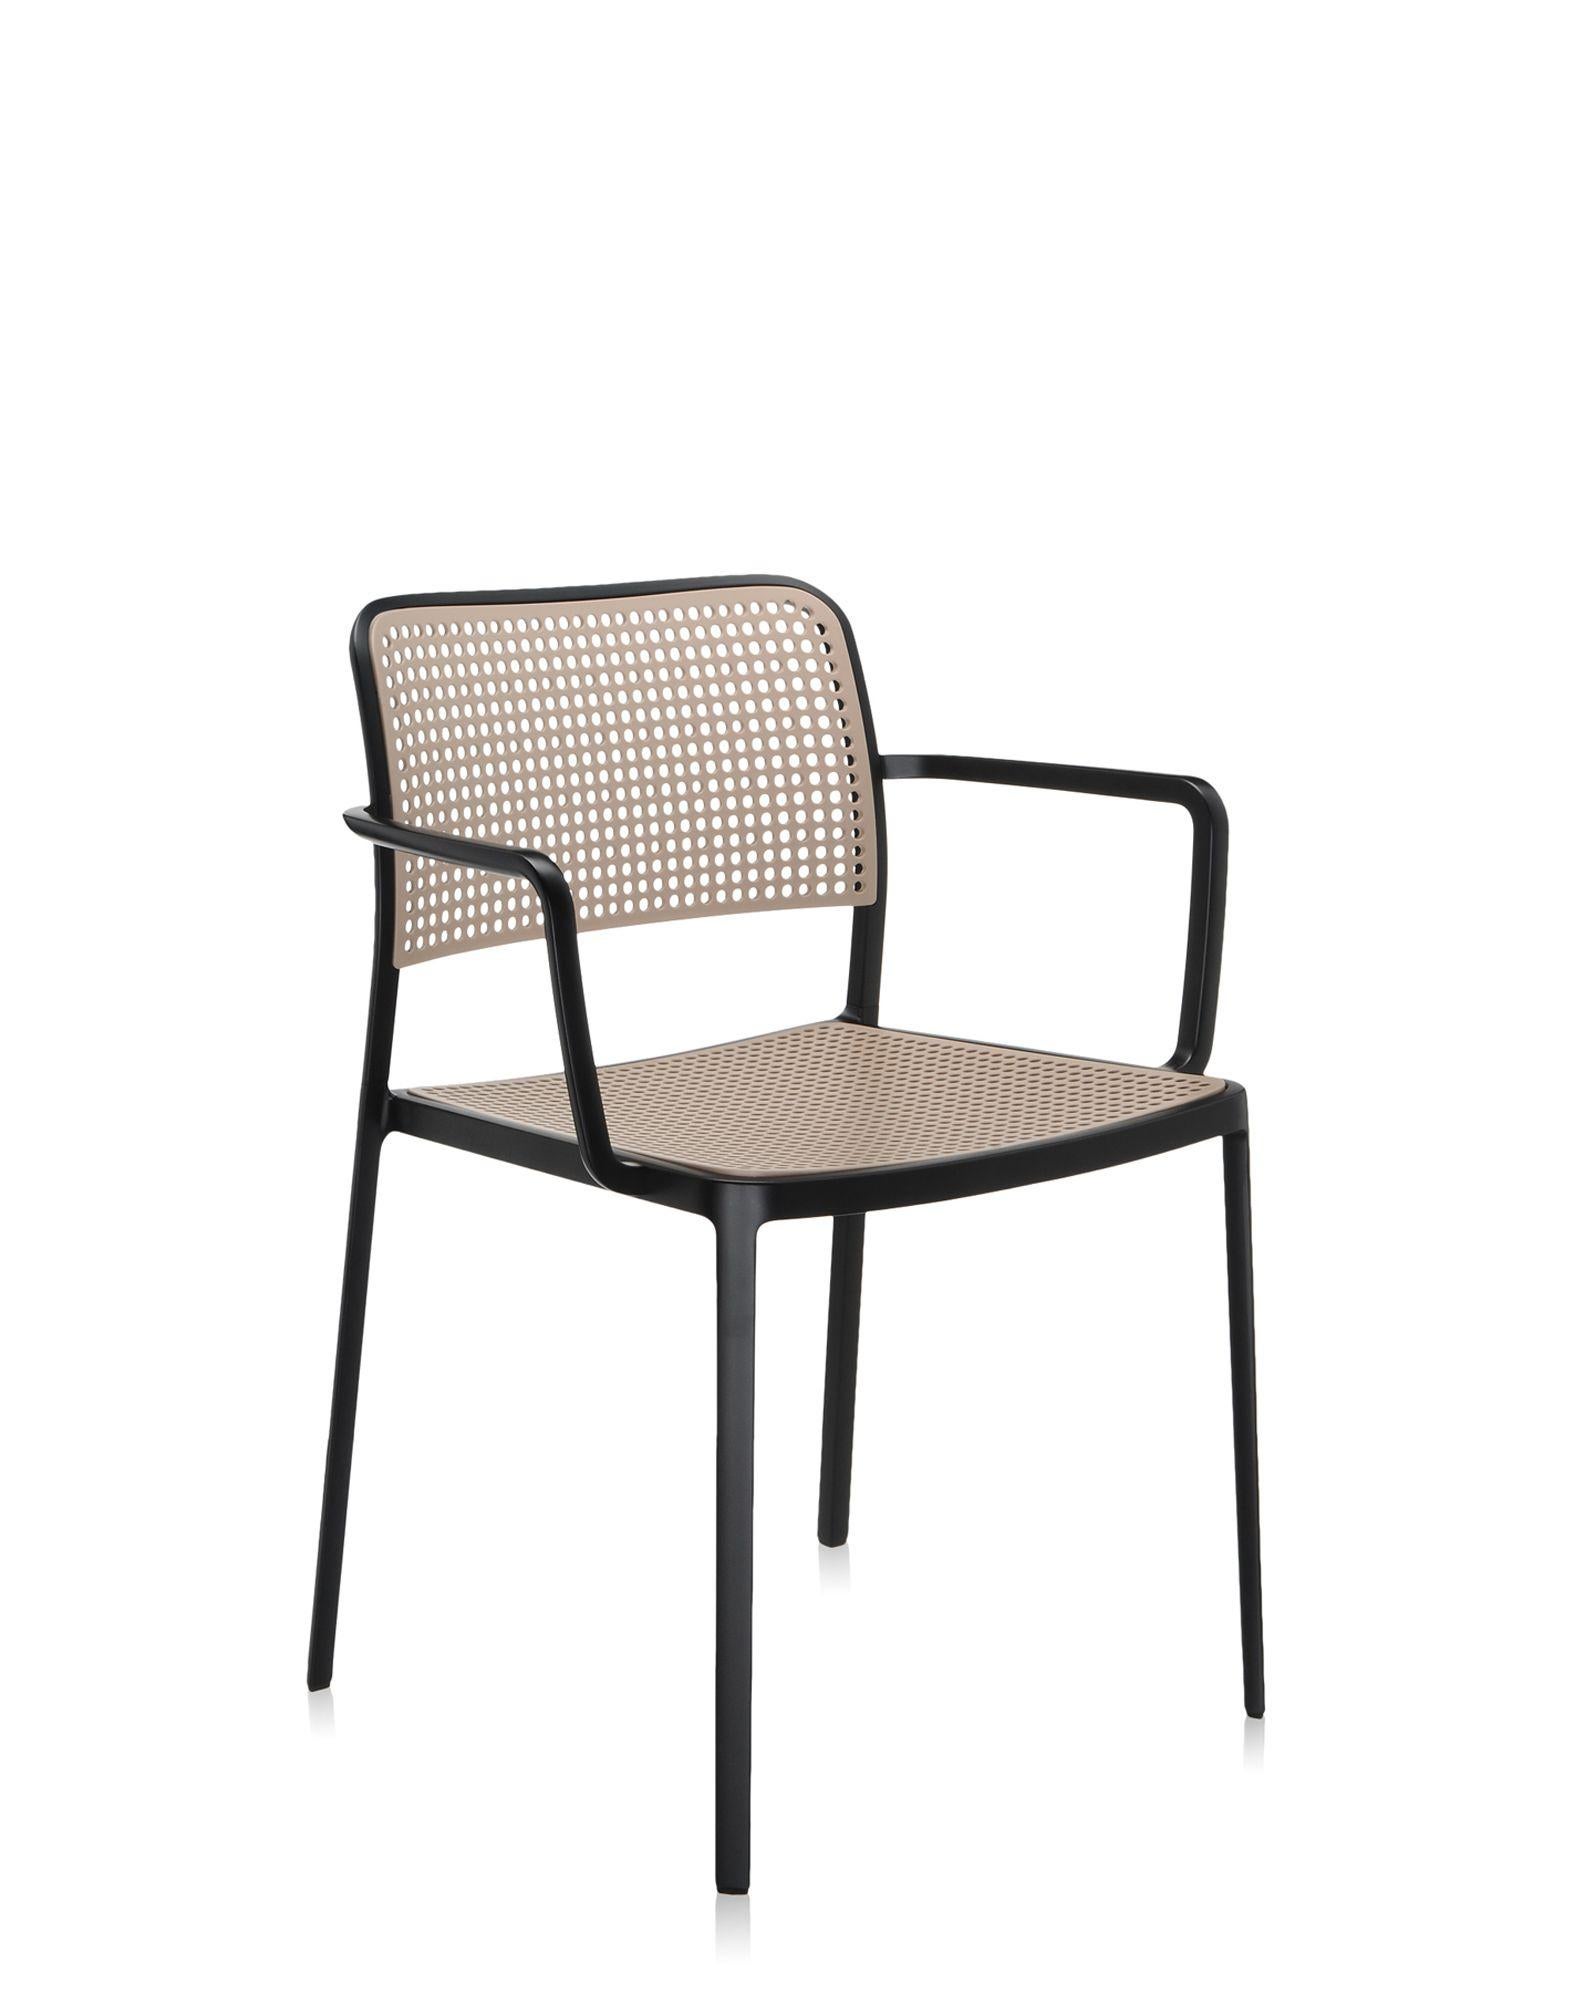 Audrey ist ein vielseitiger und moderner Stuhl, der aufgrund seiner einfachen und klaren Linienführung, die durch ein spezielles Druckgussverfahren erzielt wird, aus nur zwei Teilen besteht und ohne Schweißarbeiten hergestellt wird. Er ist